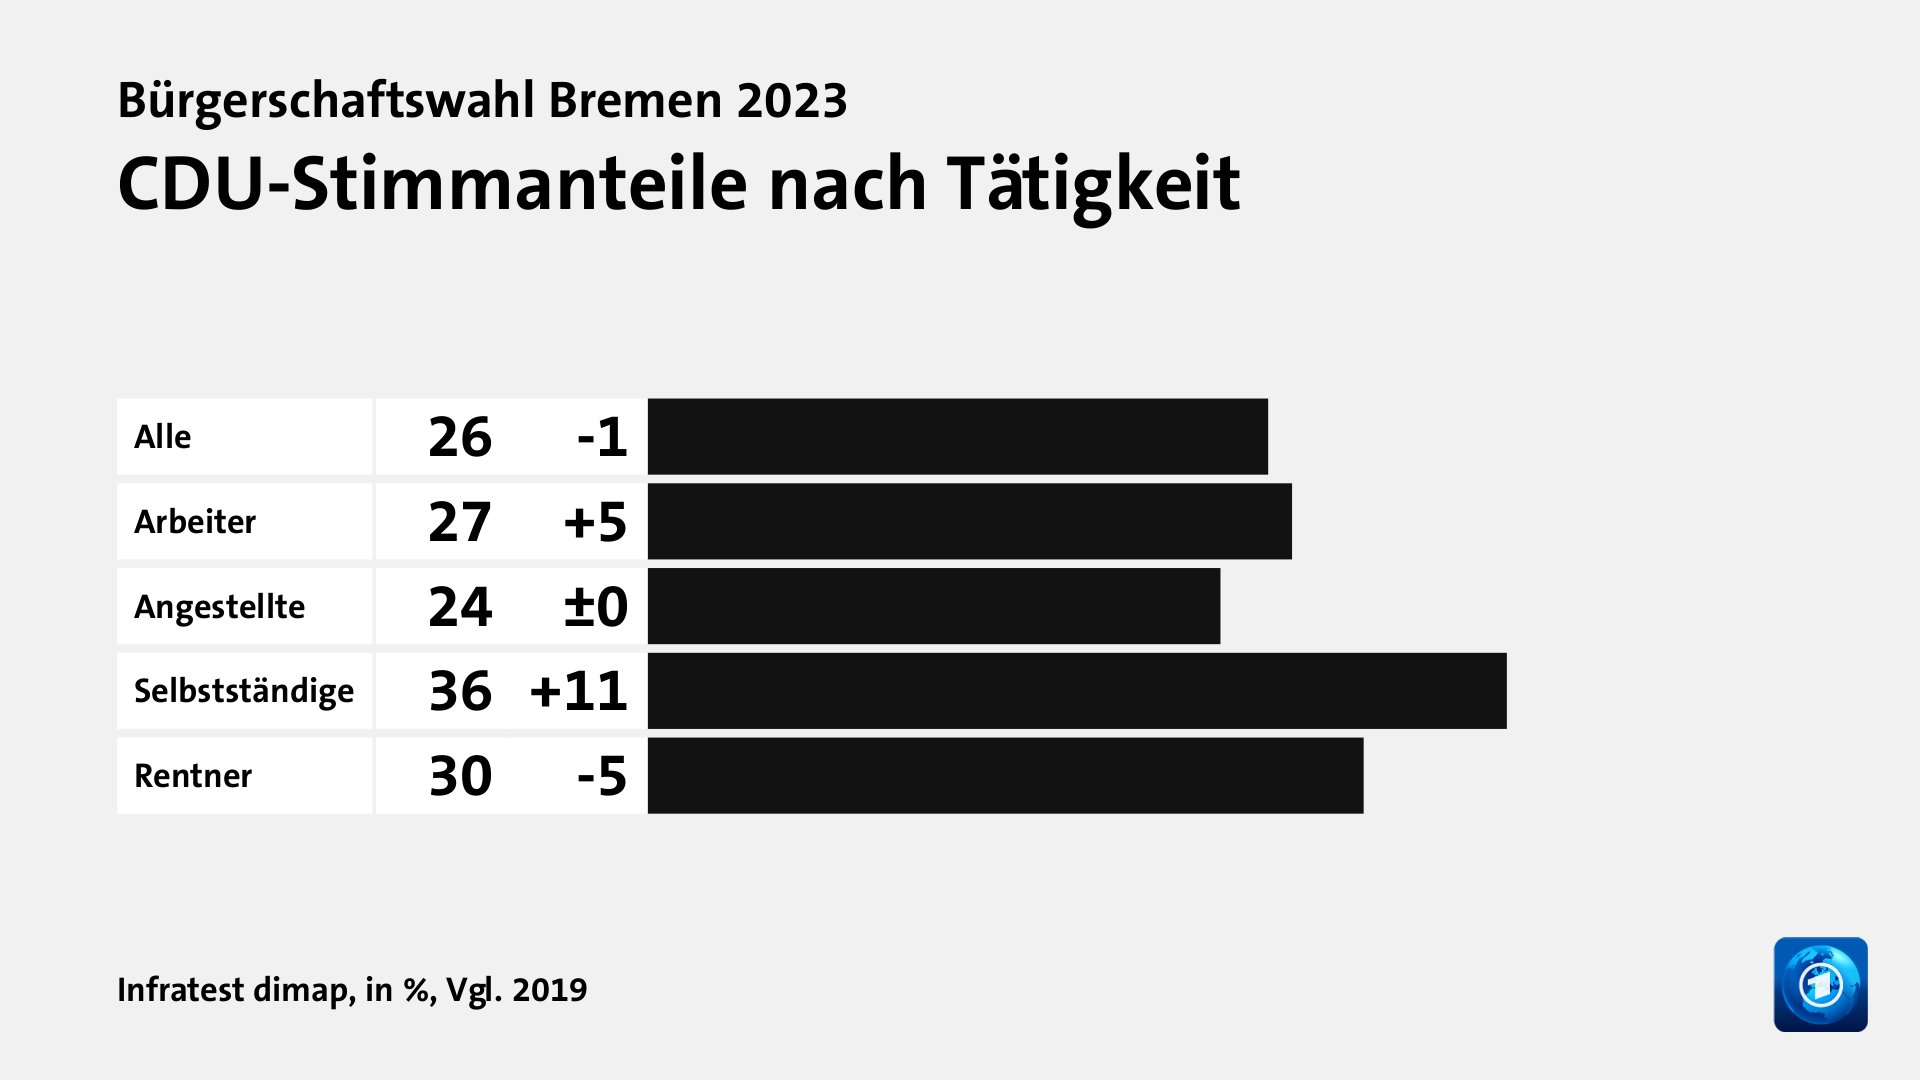 CDU-Stimmanteile nach Tätigkeit, in %, Vgl. 2019: Alle 26, Arbeiter 27, Angestellte 24, Selbstständige 36, Rentner 30, Quelle: Infratest dimap